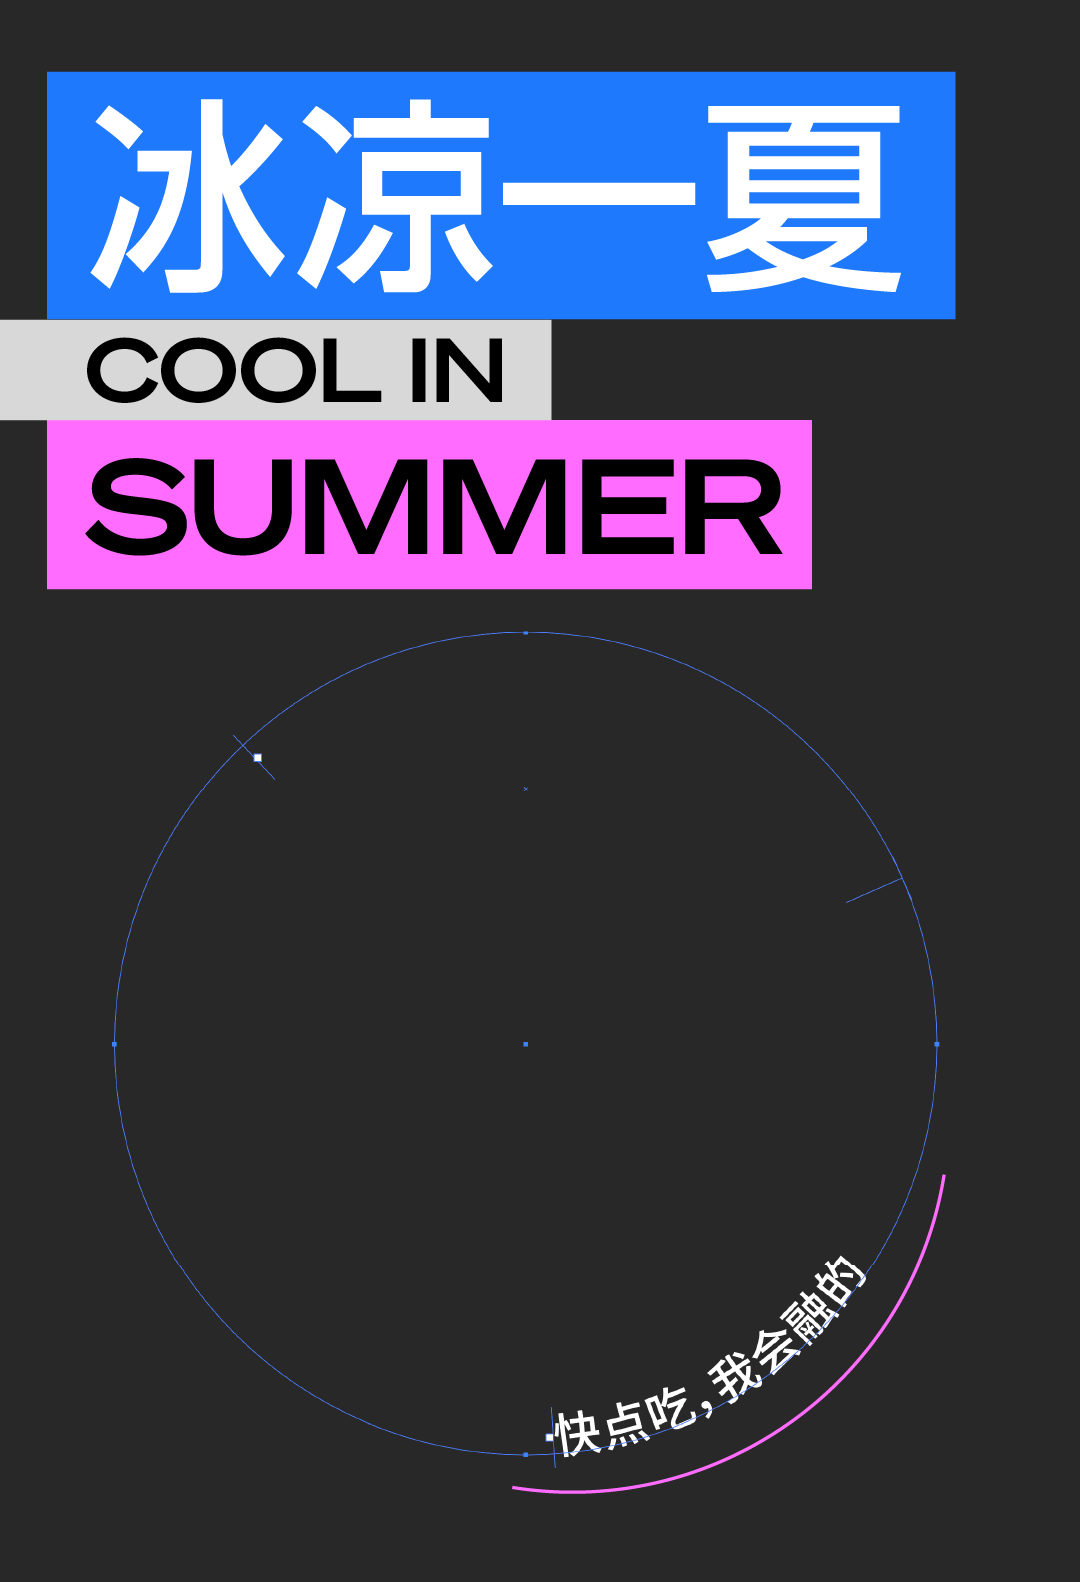 6个实例教你用PS结合AI软件制作夏日主题风格的文字海报。